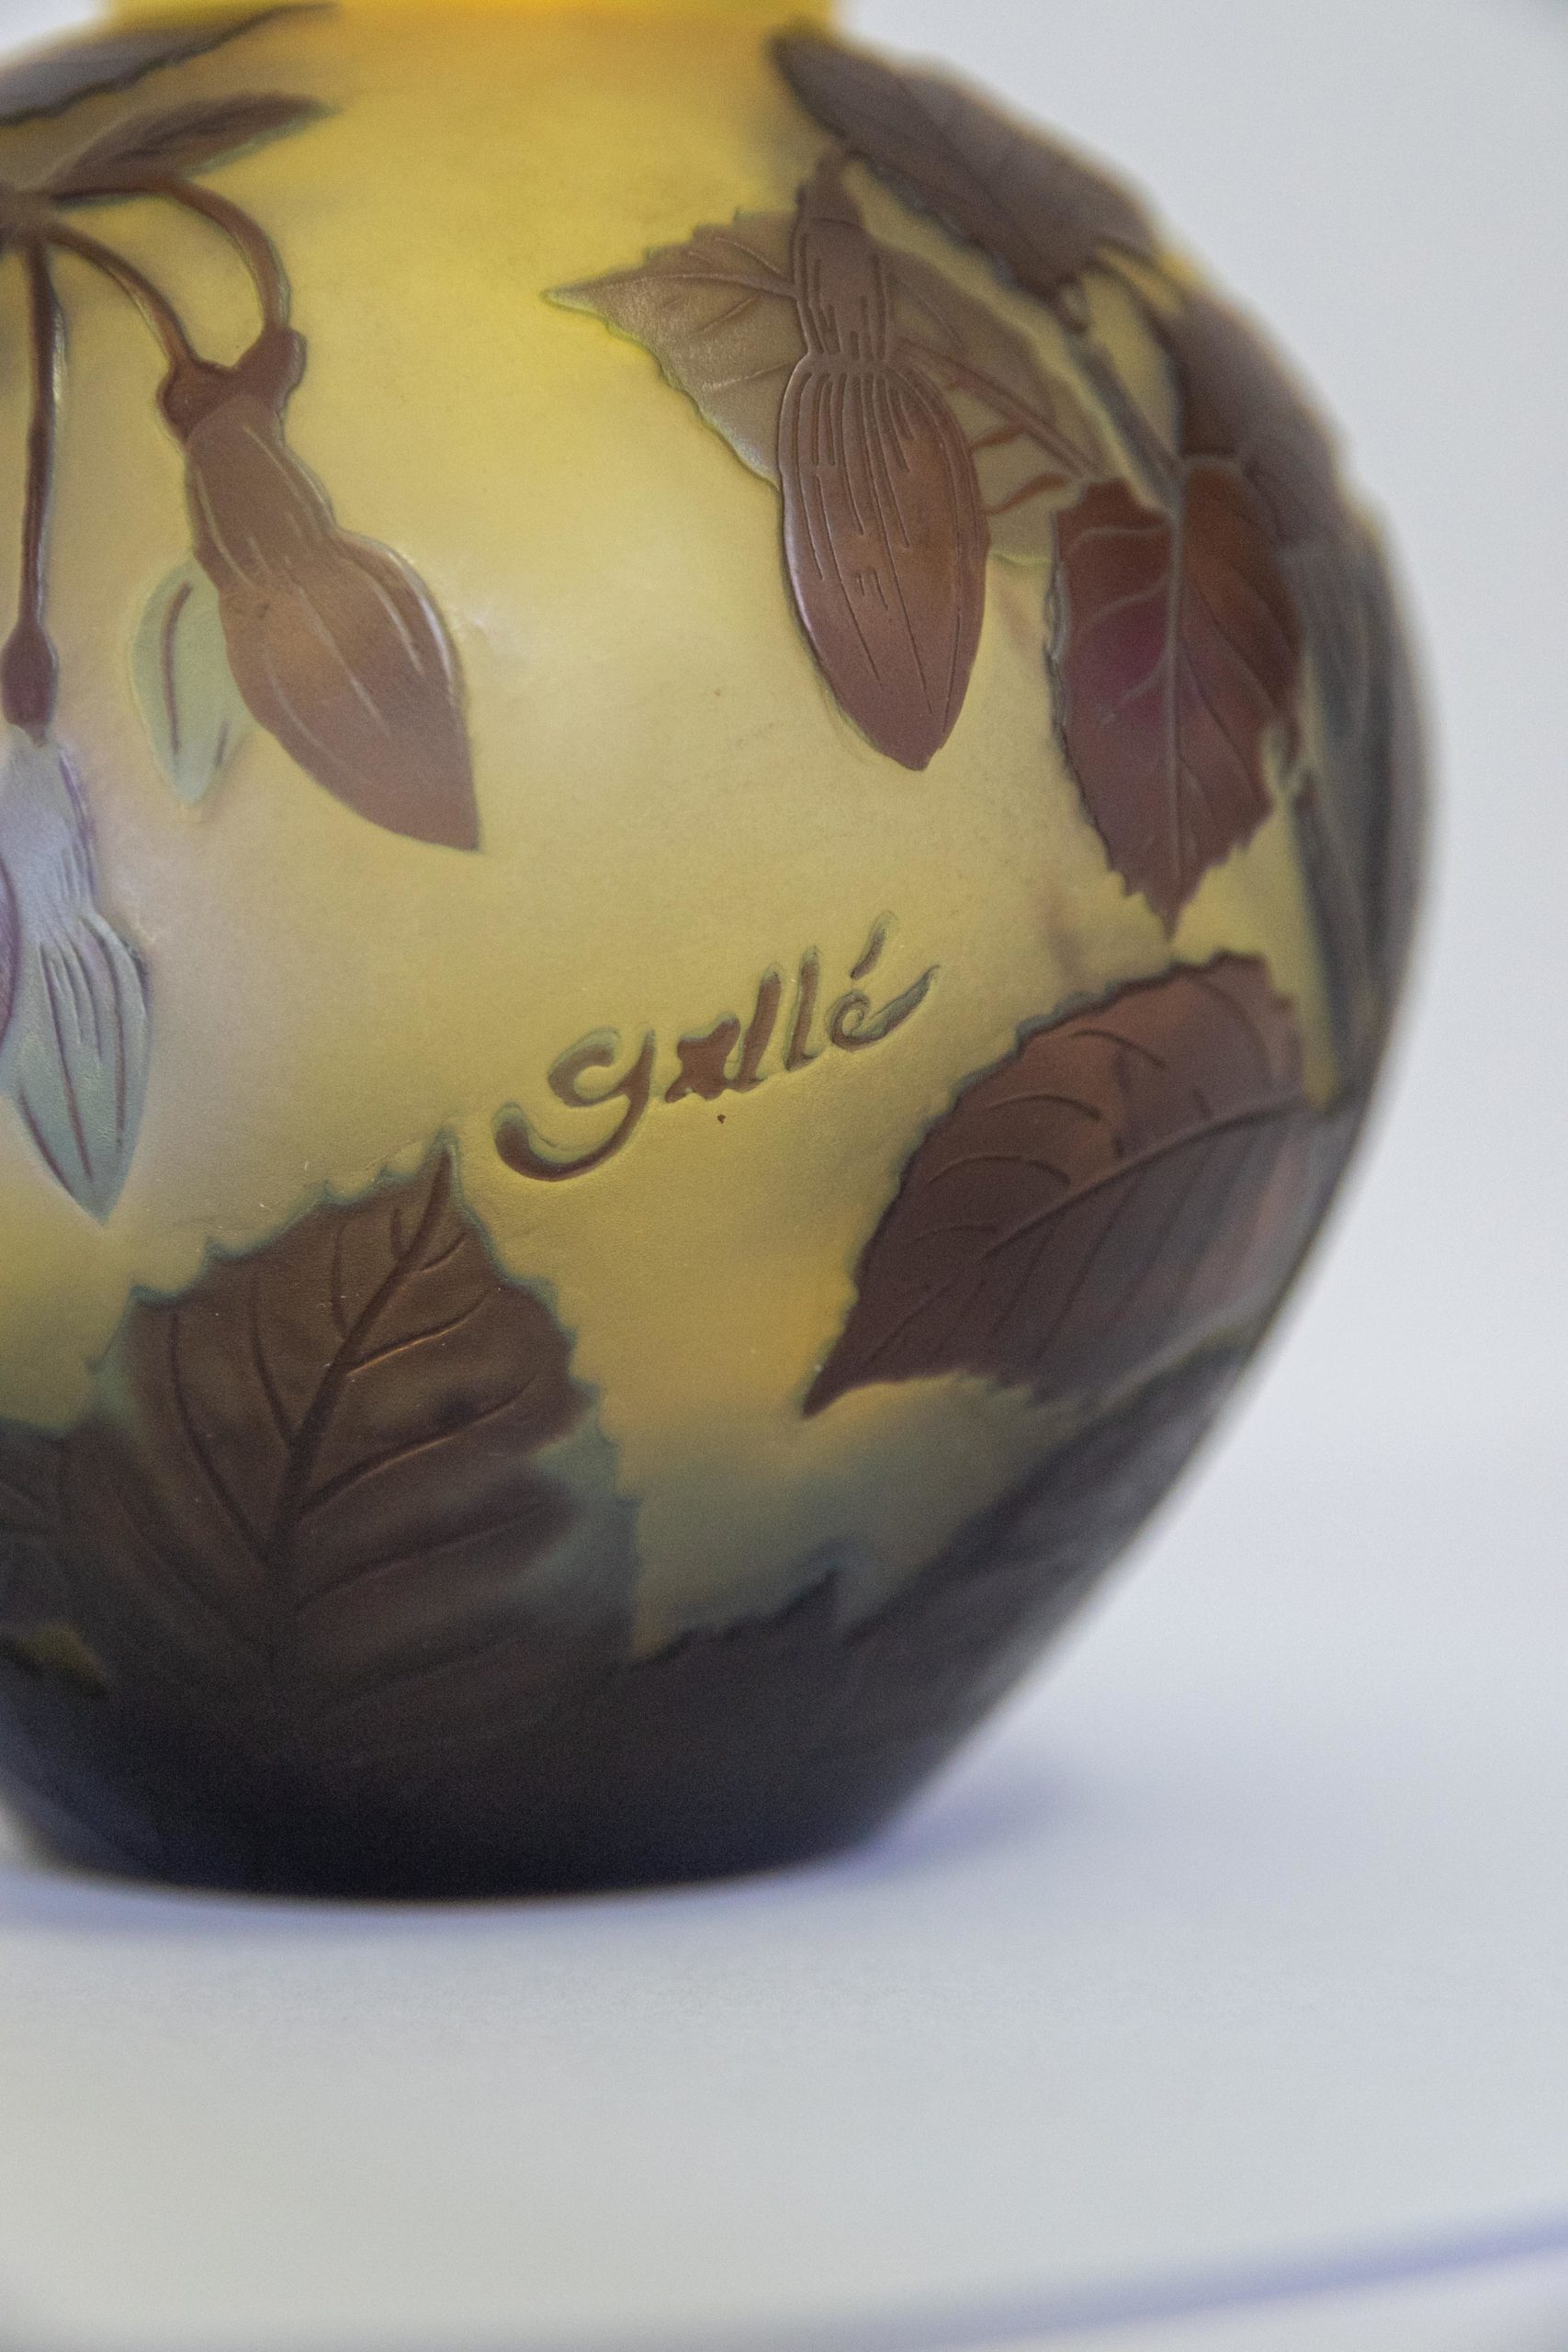 Vase-verrerie-nancy-art-nouveau-Emile-gallé-vase-gallé-authentique-signature-antiquaire-aurore-morisse-auroremorisse-affaire-conclue-liège-paris-antiquités4